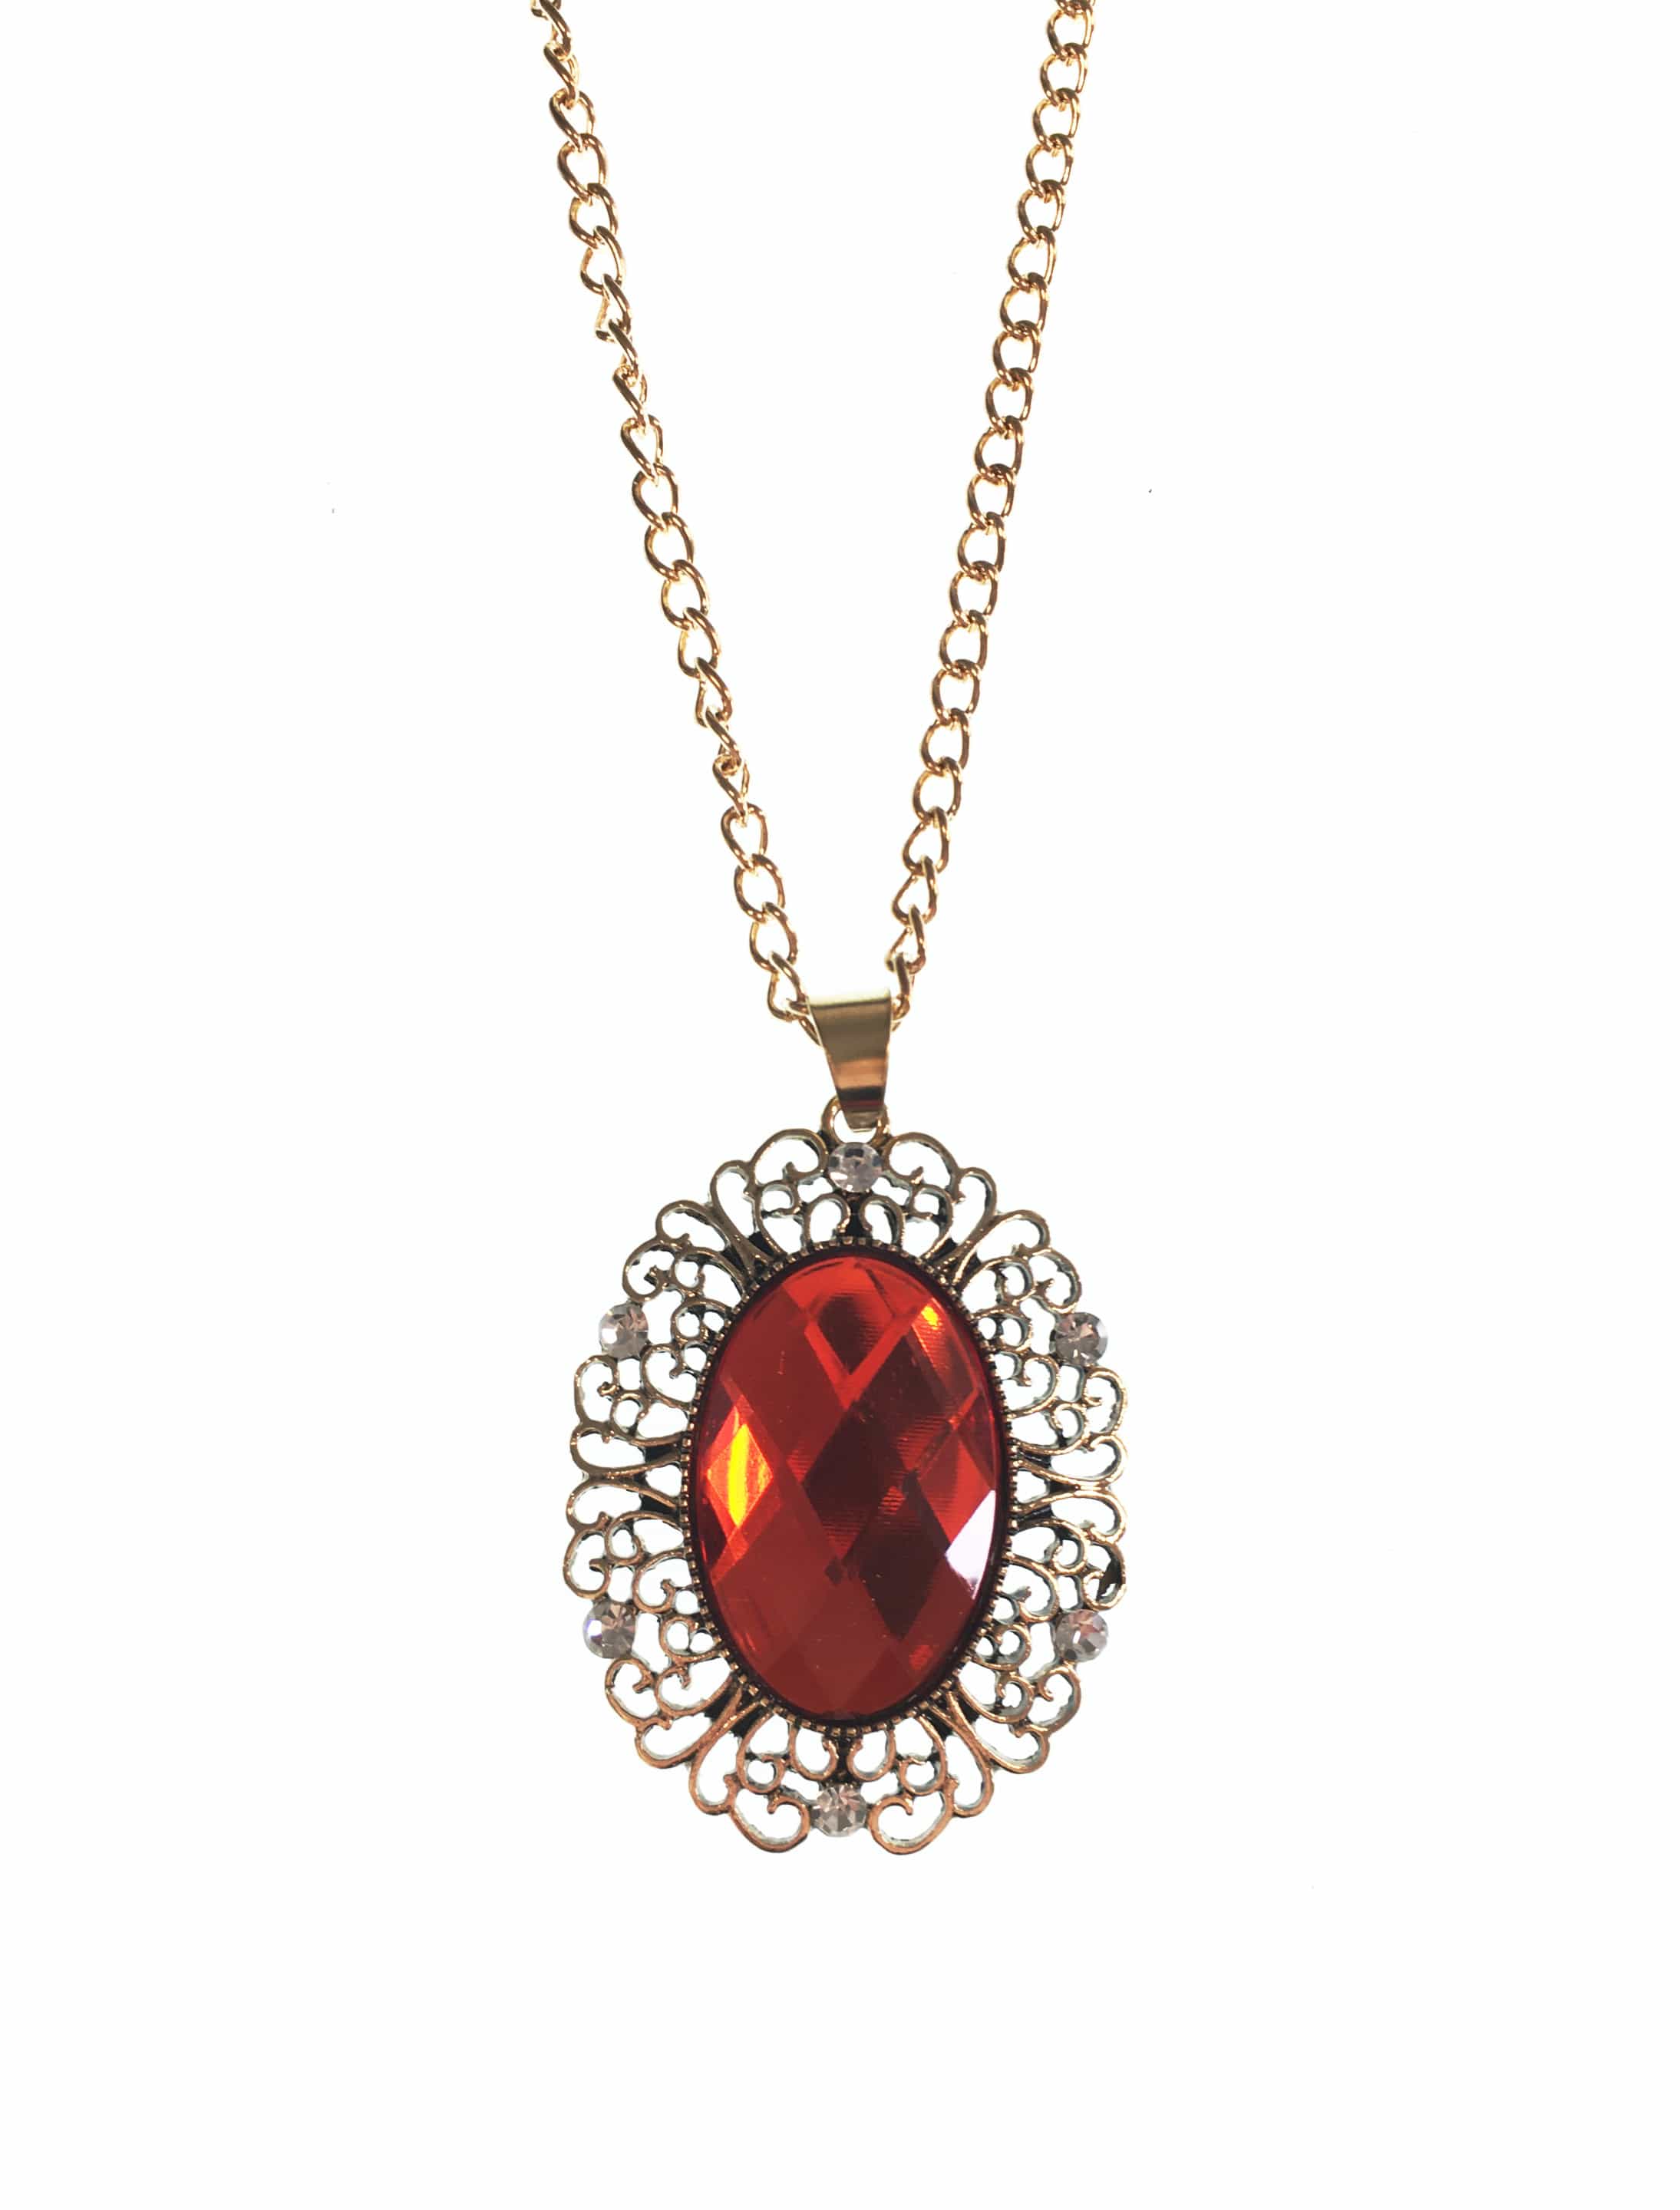 Halskette gold mit großem rotem Stein HIER kaufen » Deiters